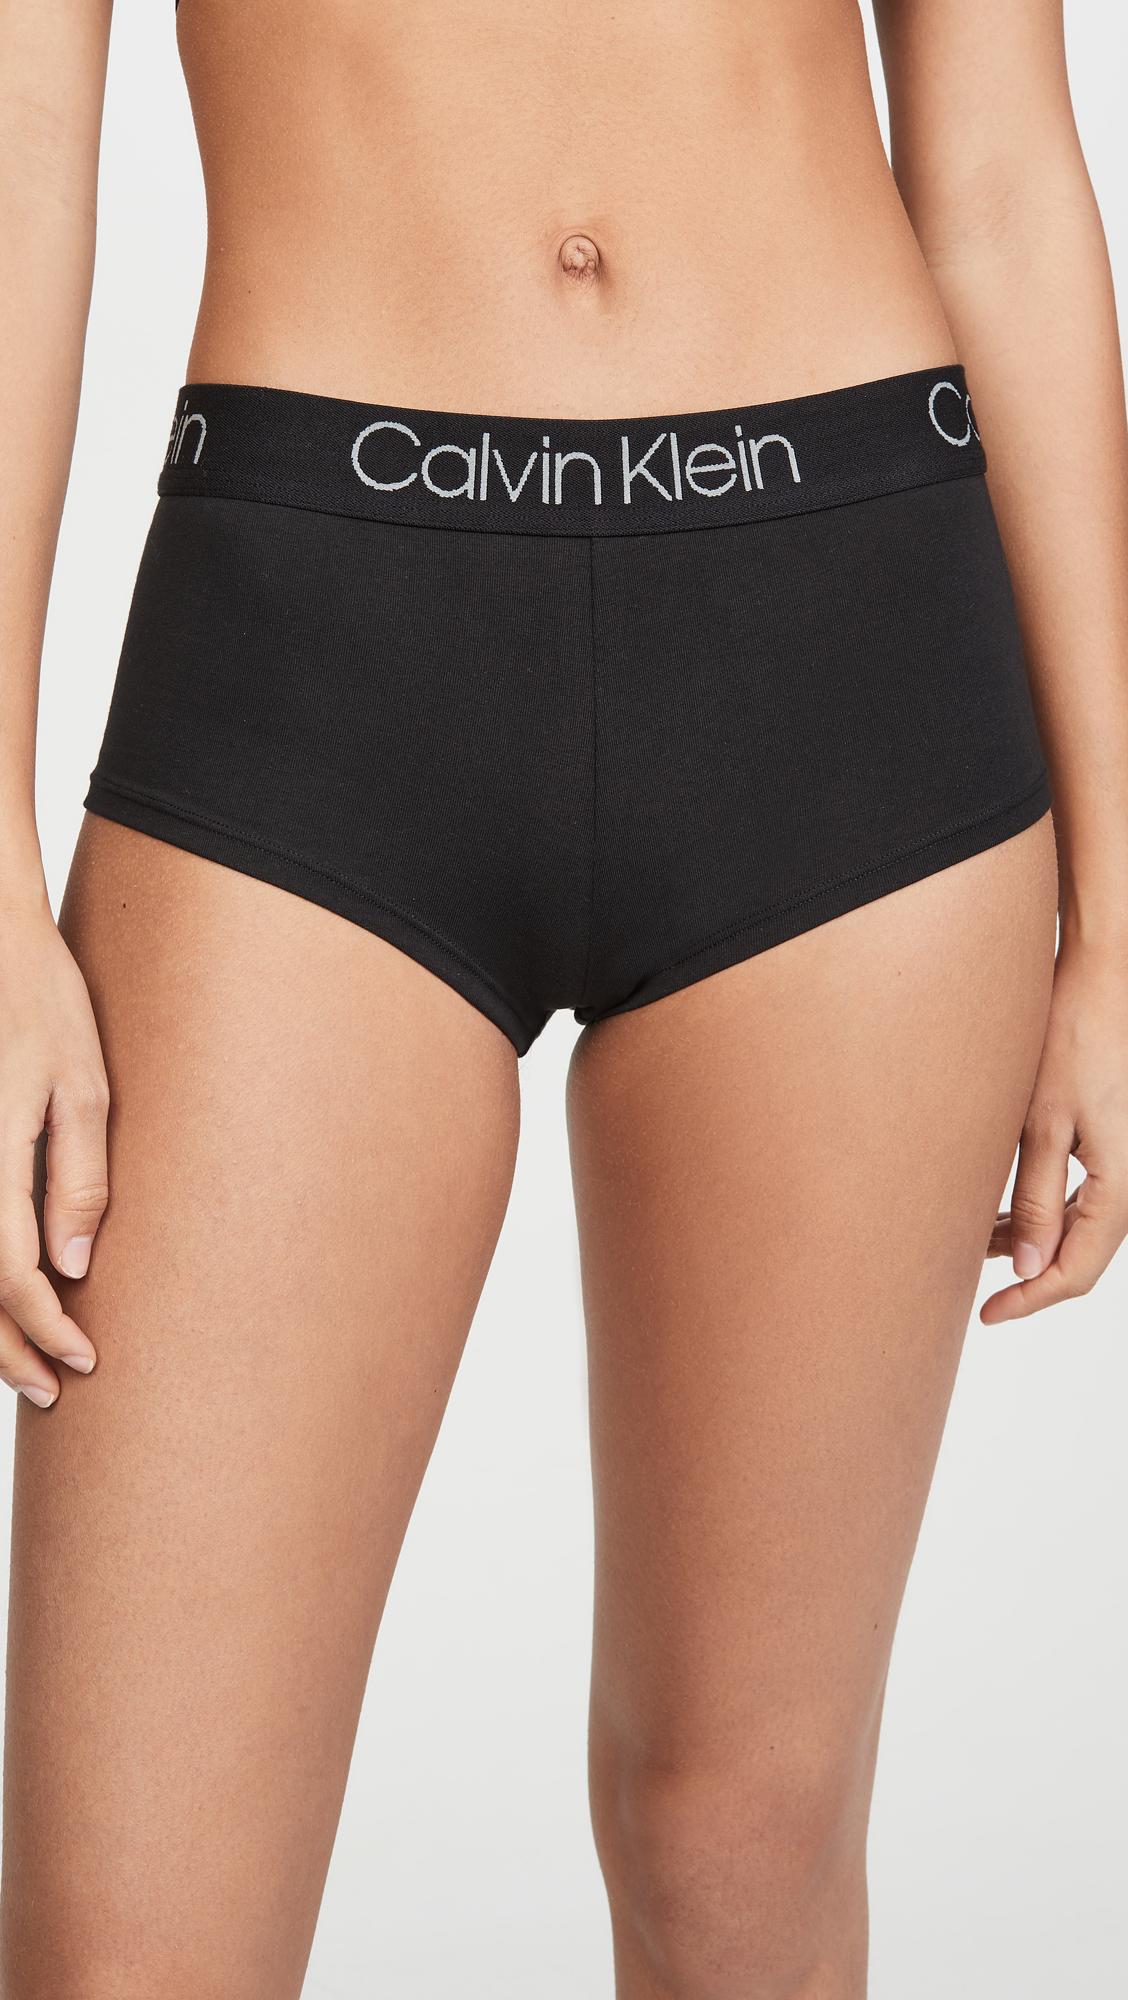 Calvin Klein Boyshorts Underwear Clearance, SAVE 55% - silvavaldes.es